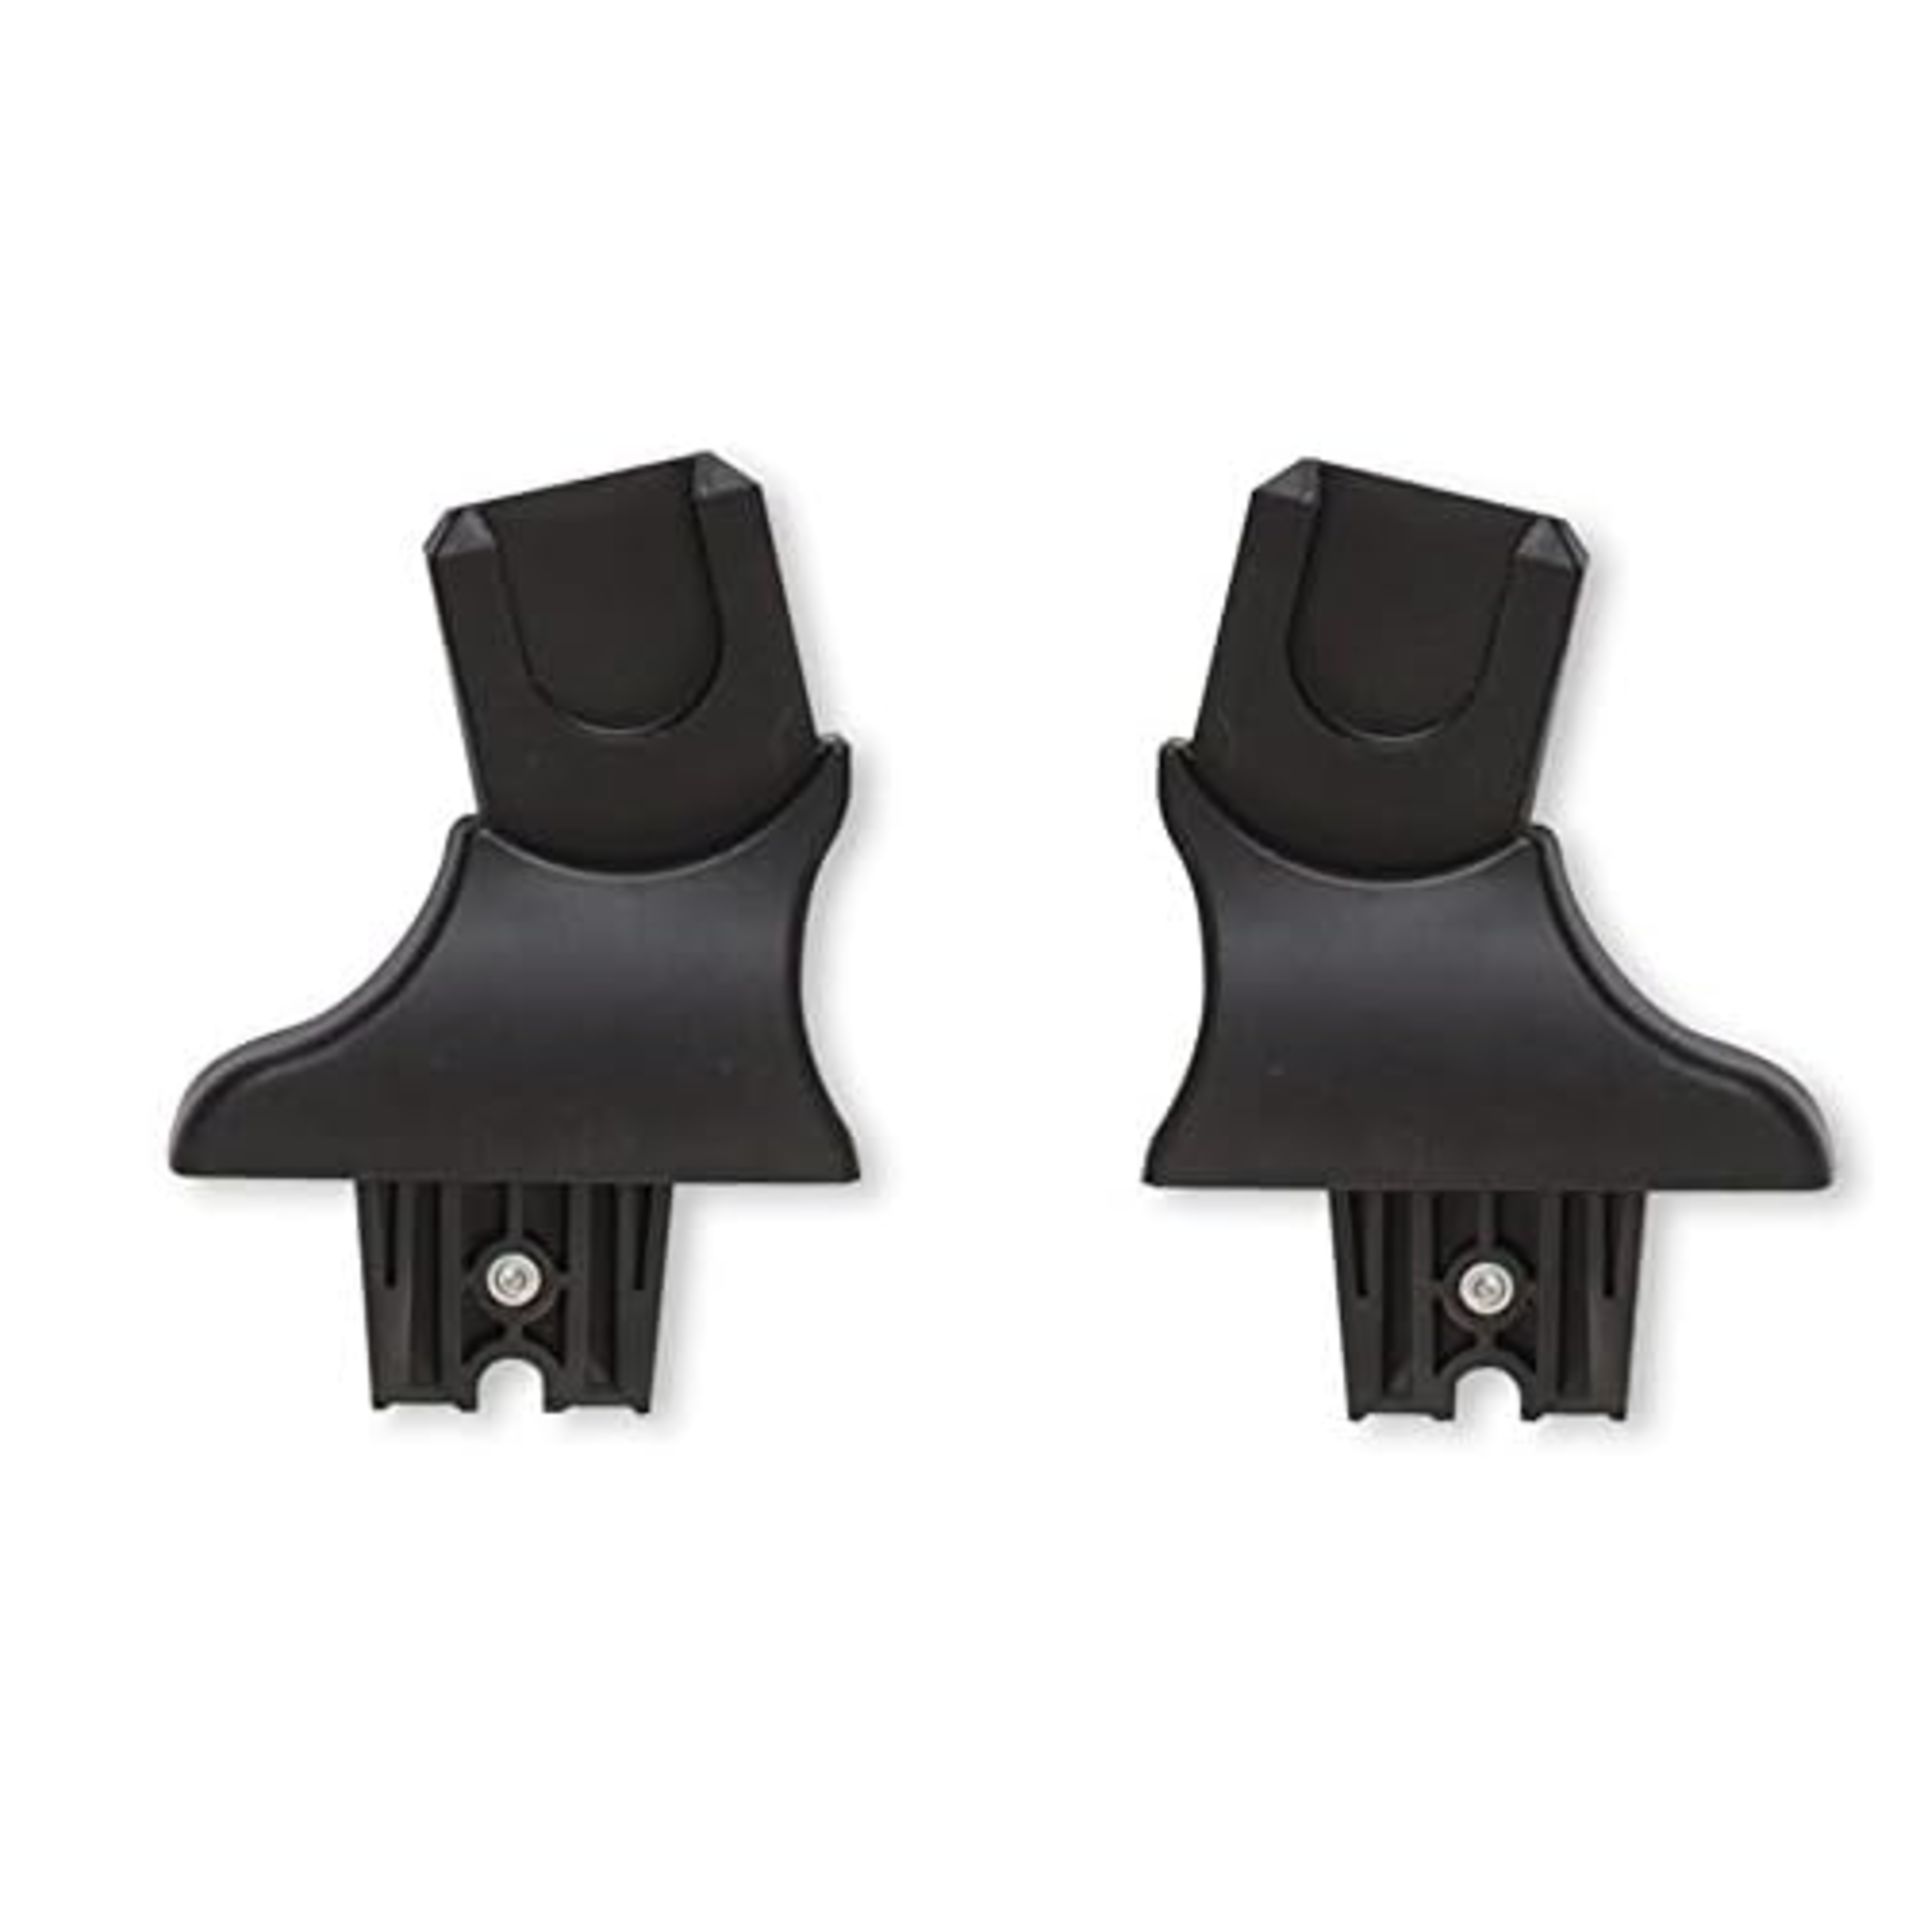 Venicci maxi cosi pebble cabrio and citi car seat adaptors for venicci frame